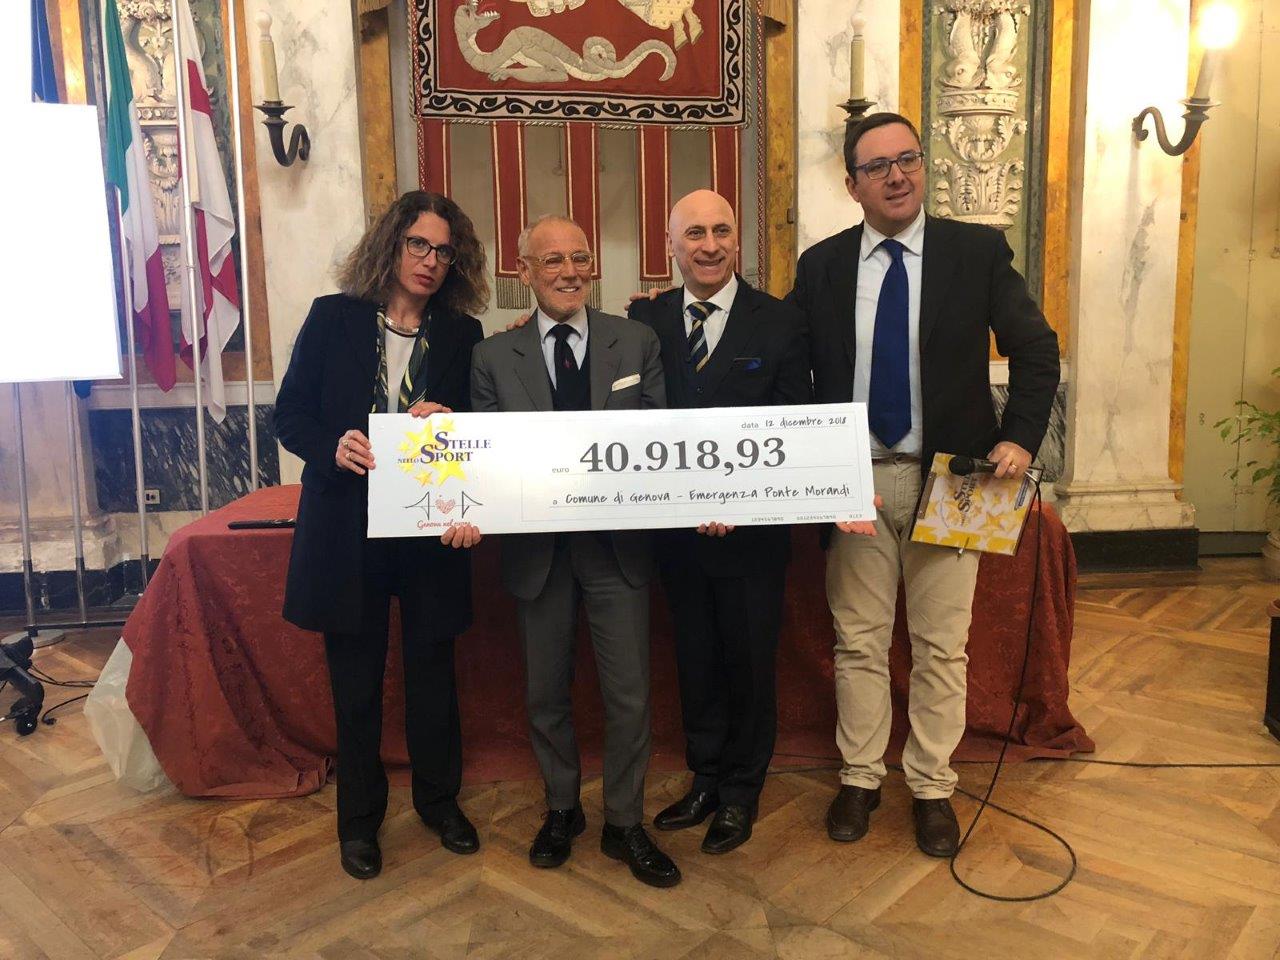 Stelle nello Sport consegna quasi 41.000 euro al Comune di Genova per emergenza Ponte Morandi